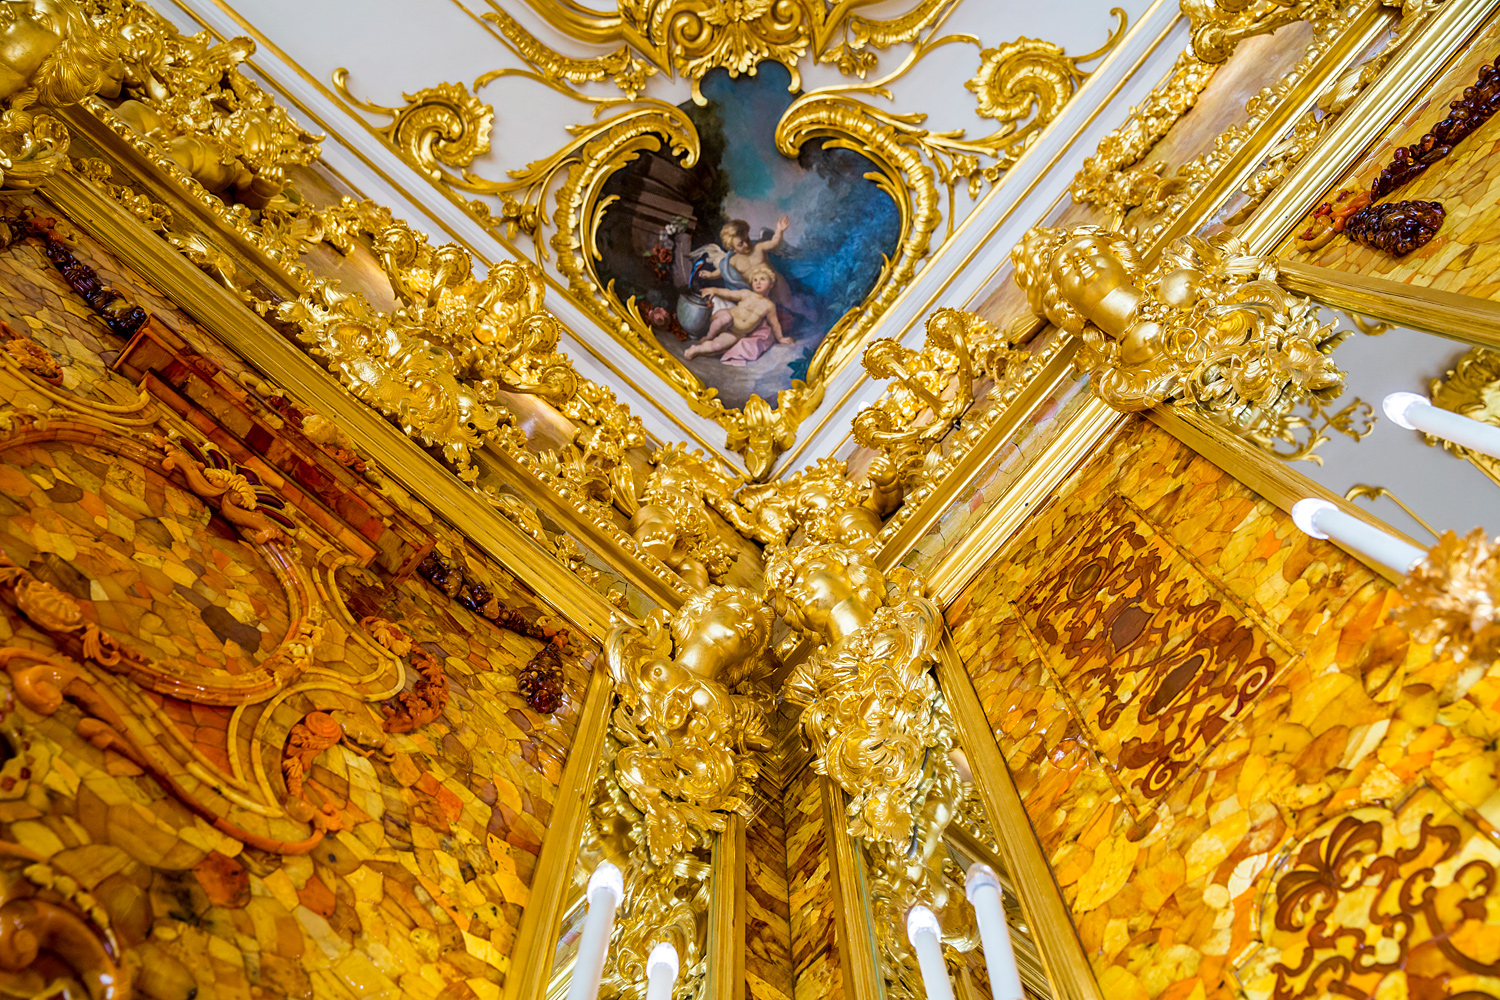 Екатерининский дворец в санкт петербурге янтарная комната фото